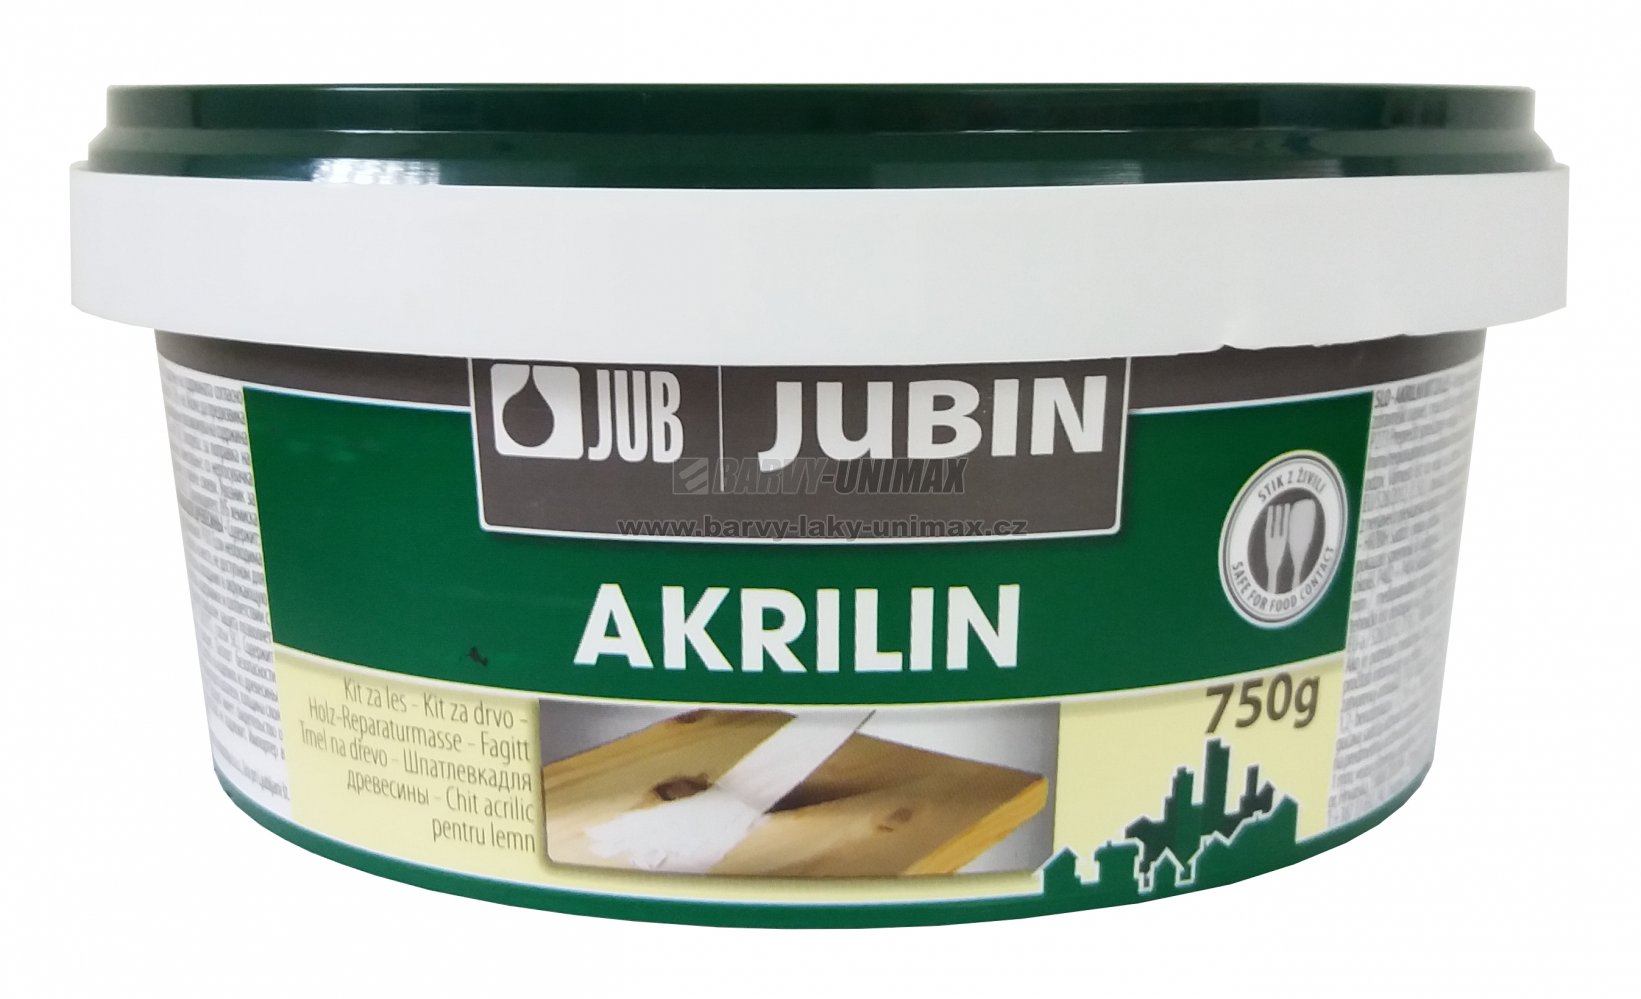 JUB JUBIN Akrilin Buk,750g